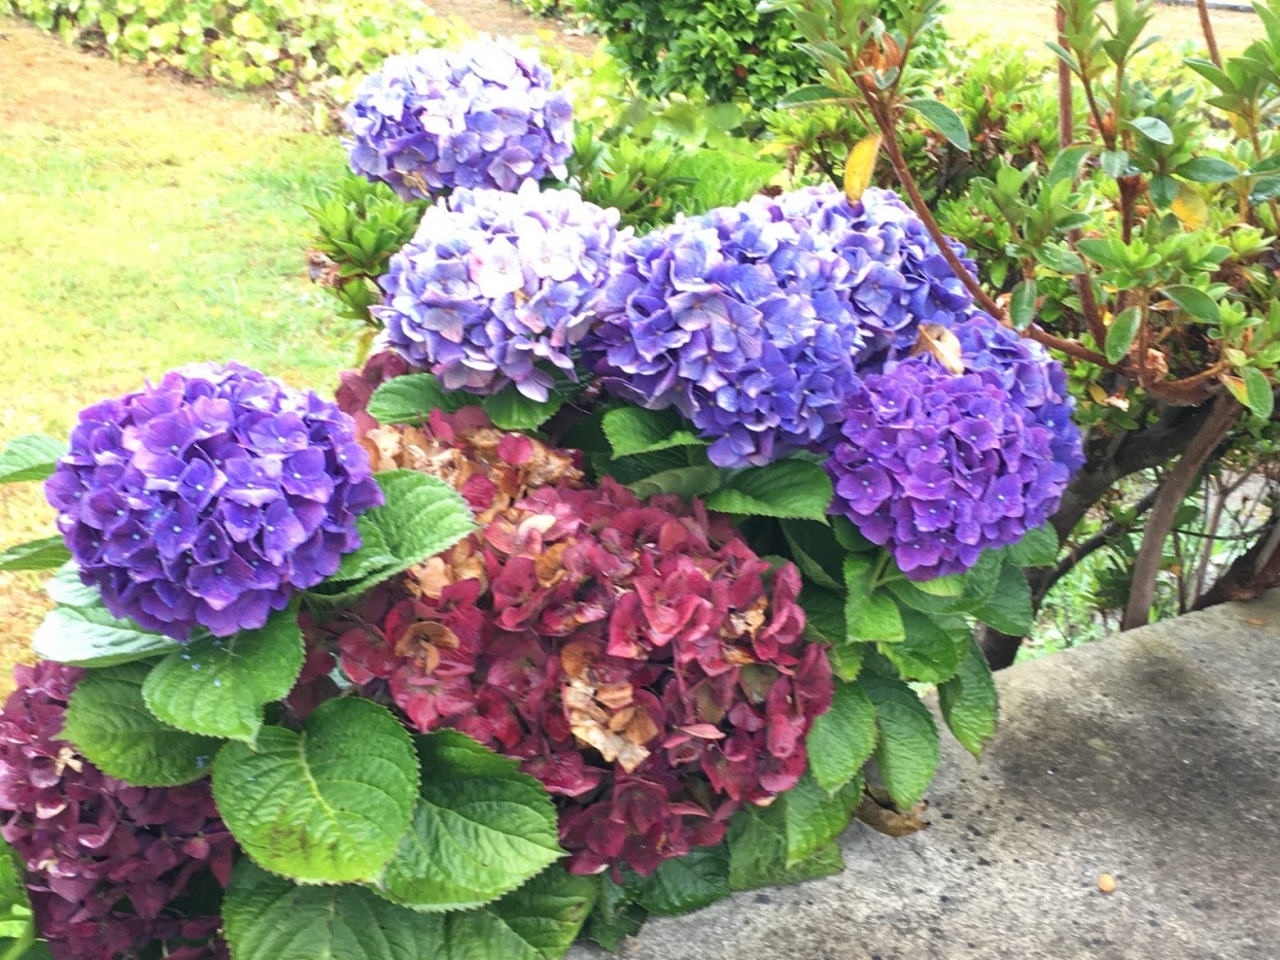 日本では珍しい色の紫陽花。今回、紫陽花の写真を何枚撮ったことか・・。